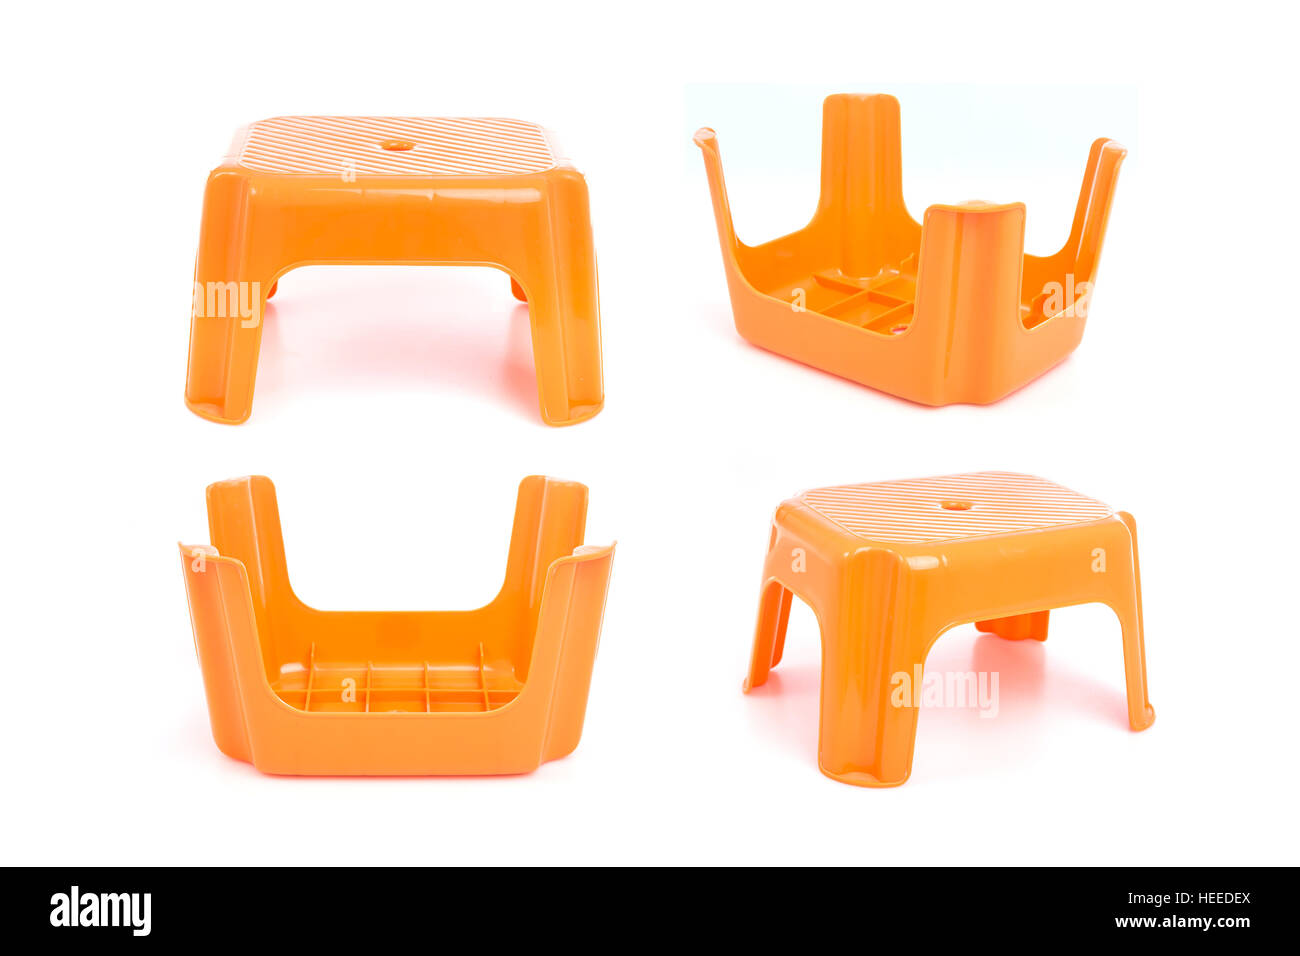 Mini traditionnel orange chaise en plastique quatre jambes isolé sur fond blanc Banque D'Images